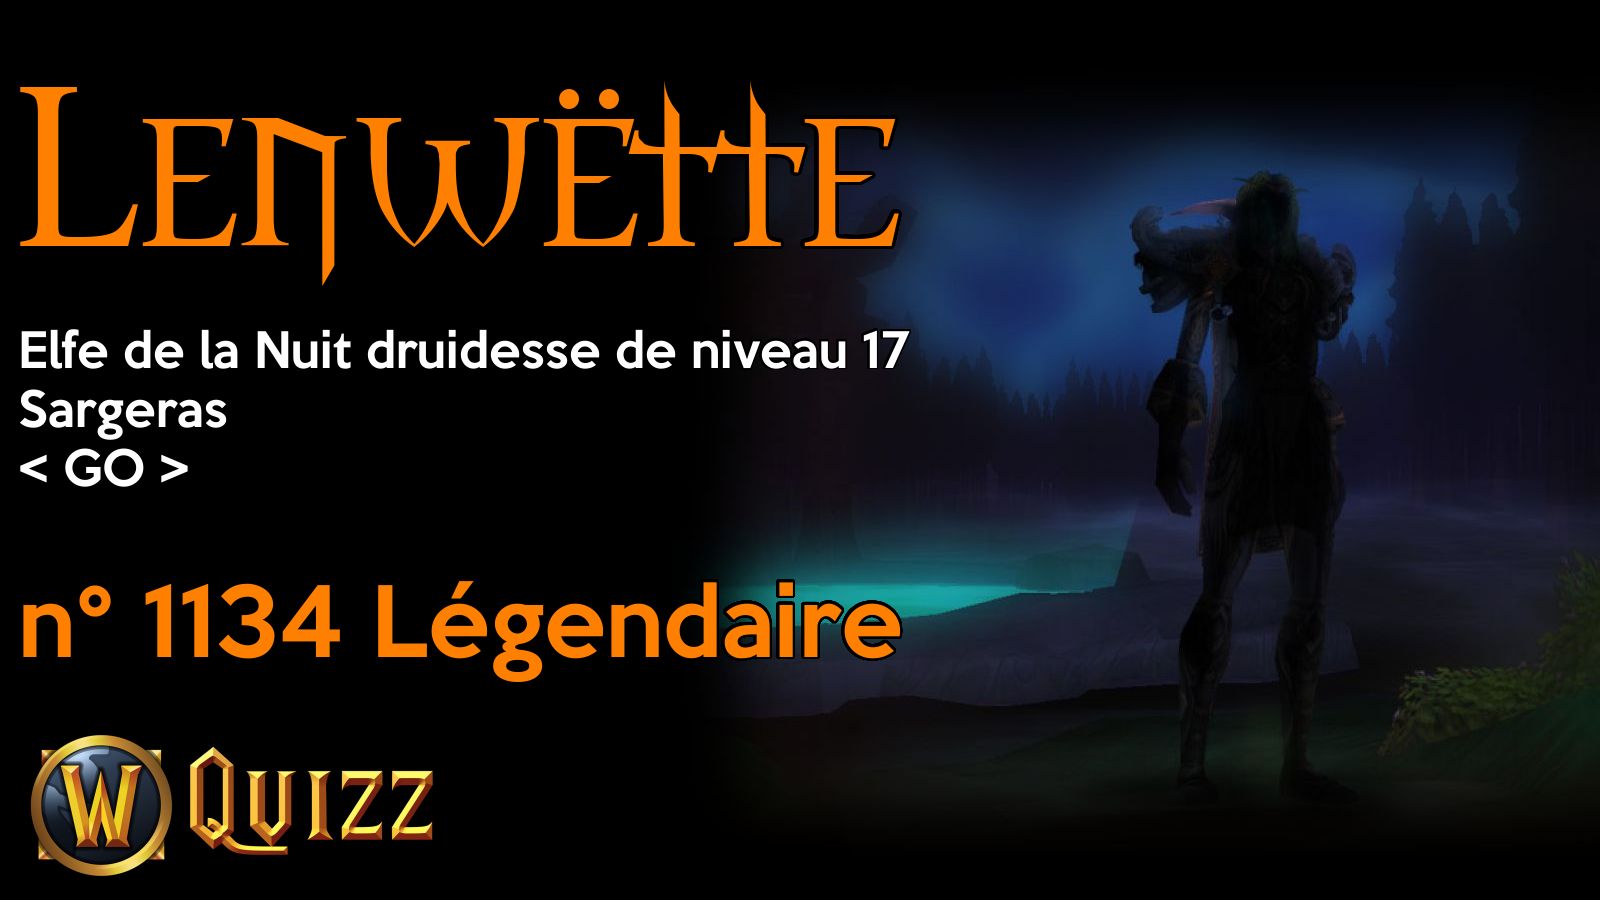 Lenwëtte, Elfe de la Nuit druidesse de niveau 17, Sargeras